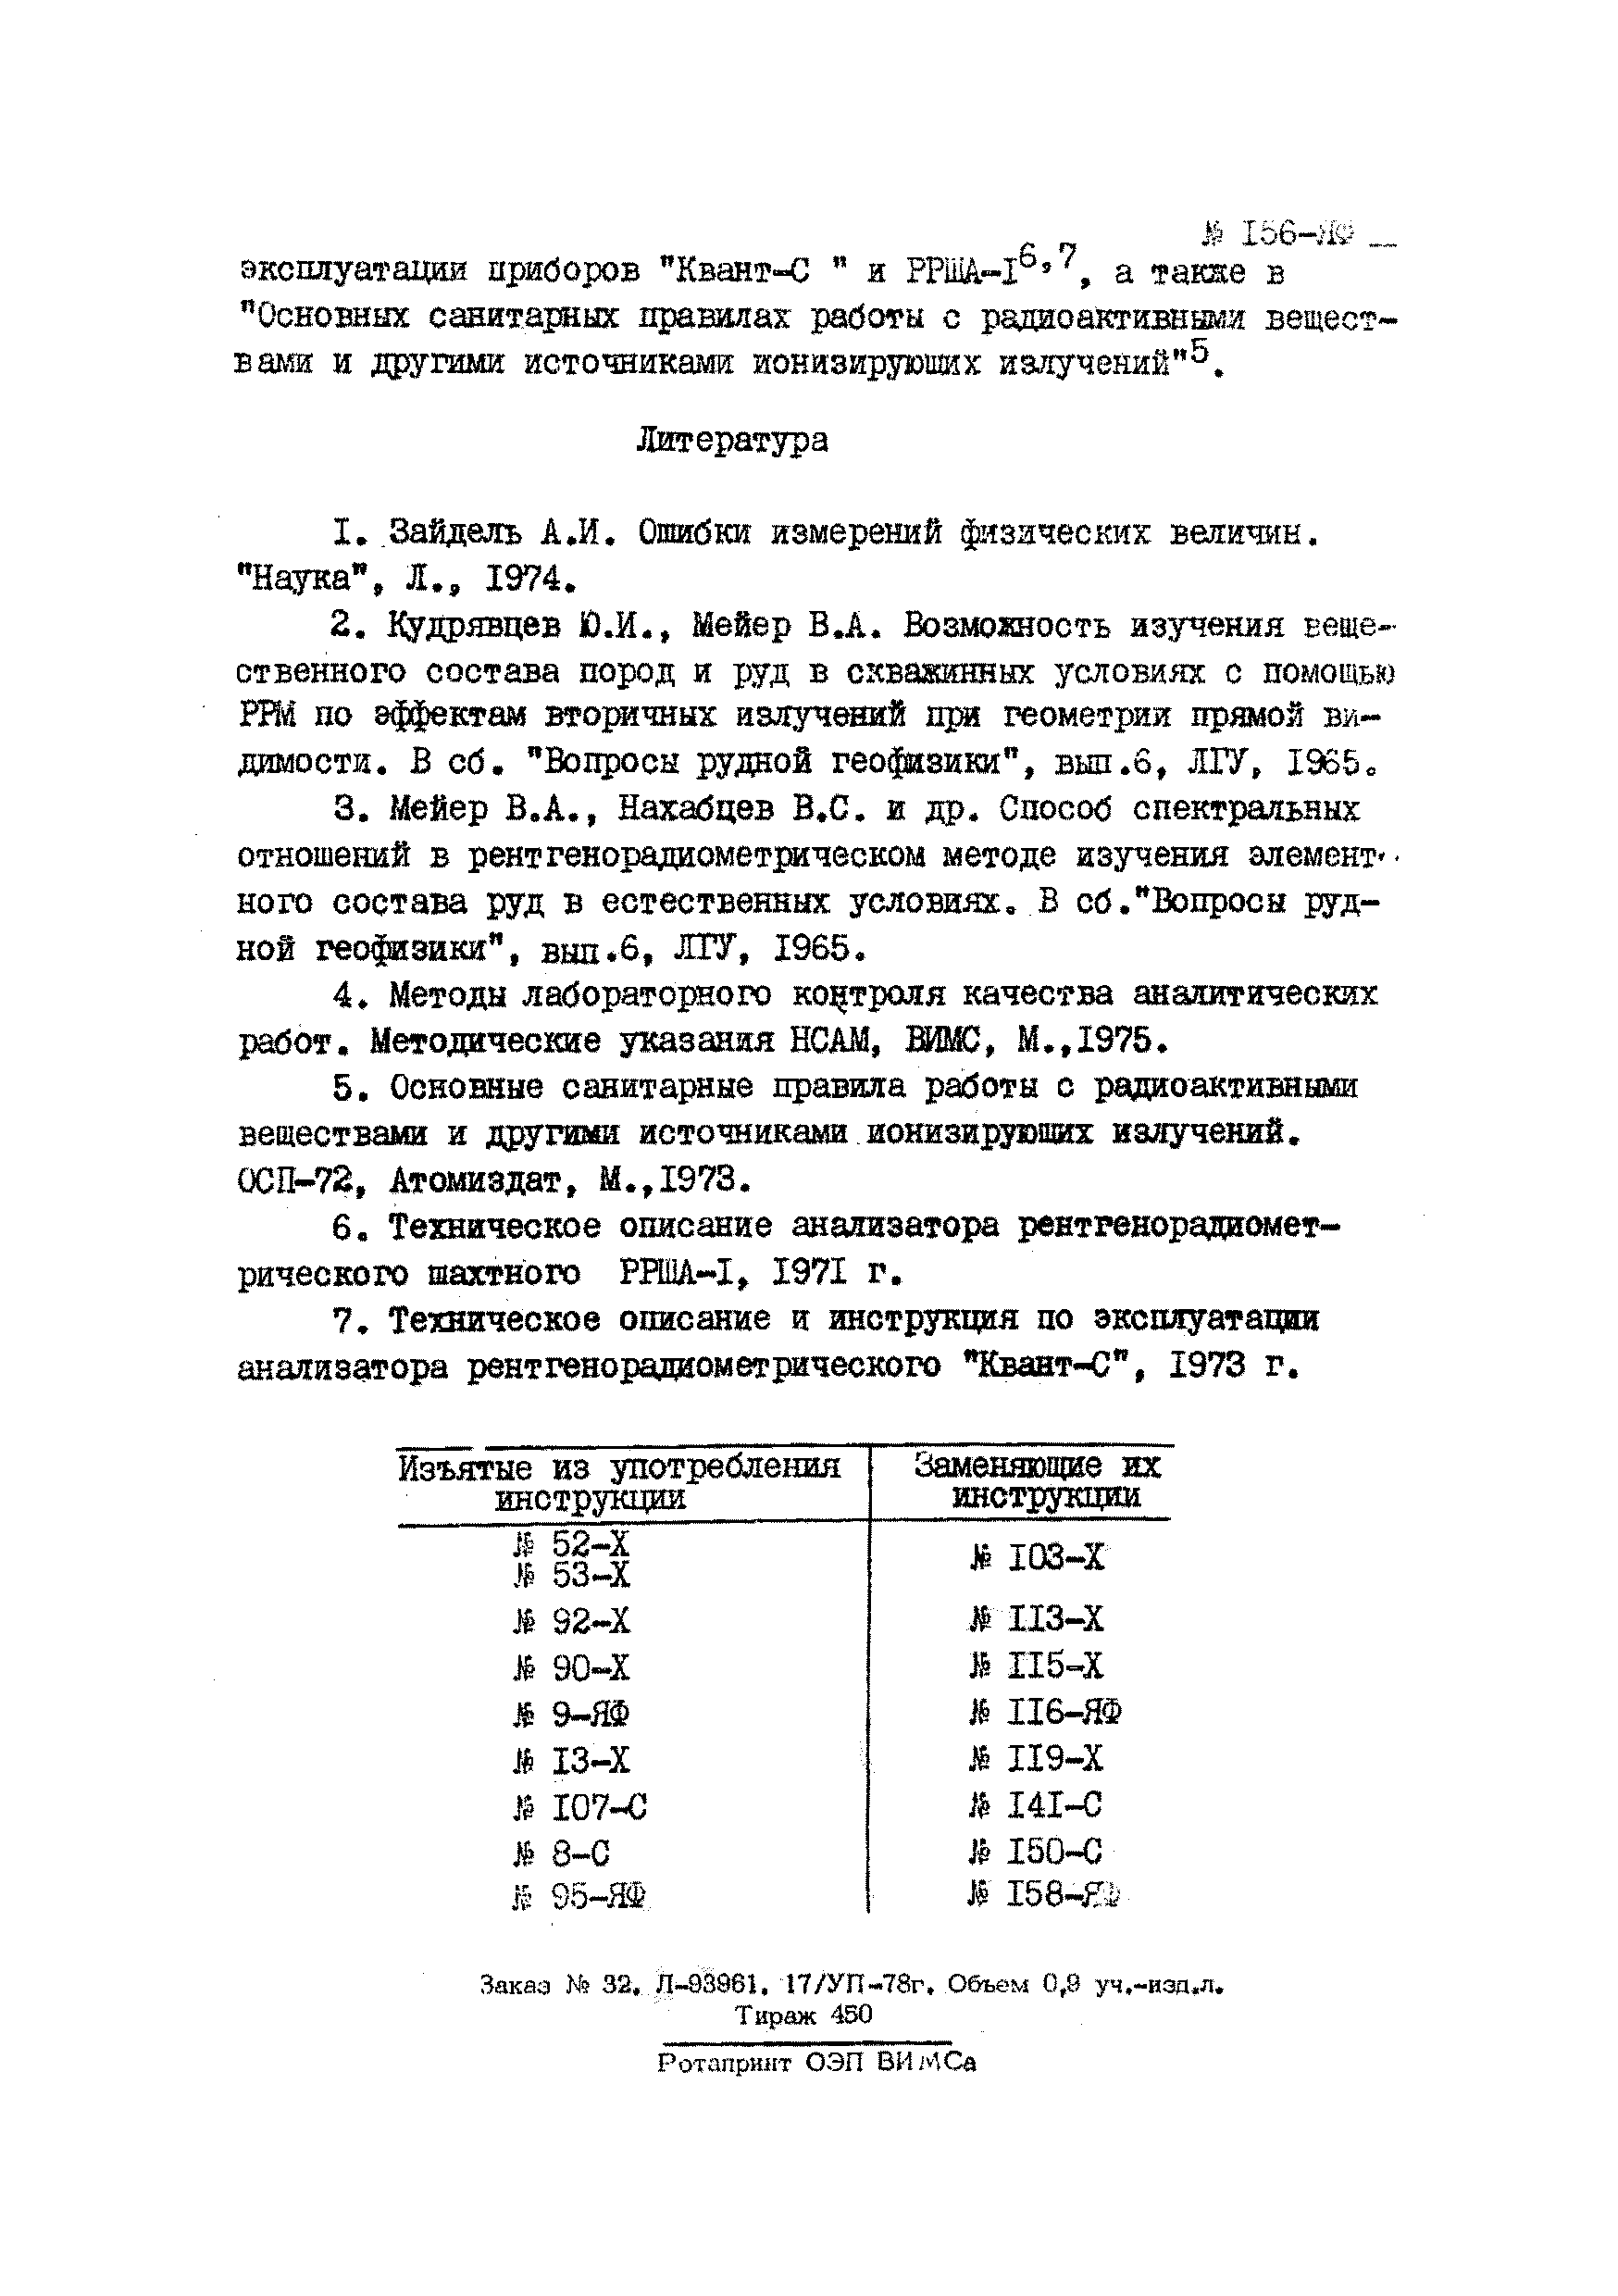 Инструкция НСАМ 156-ЯФ